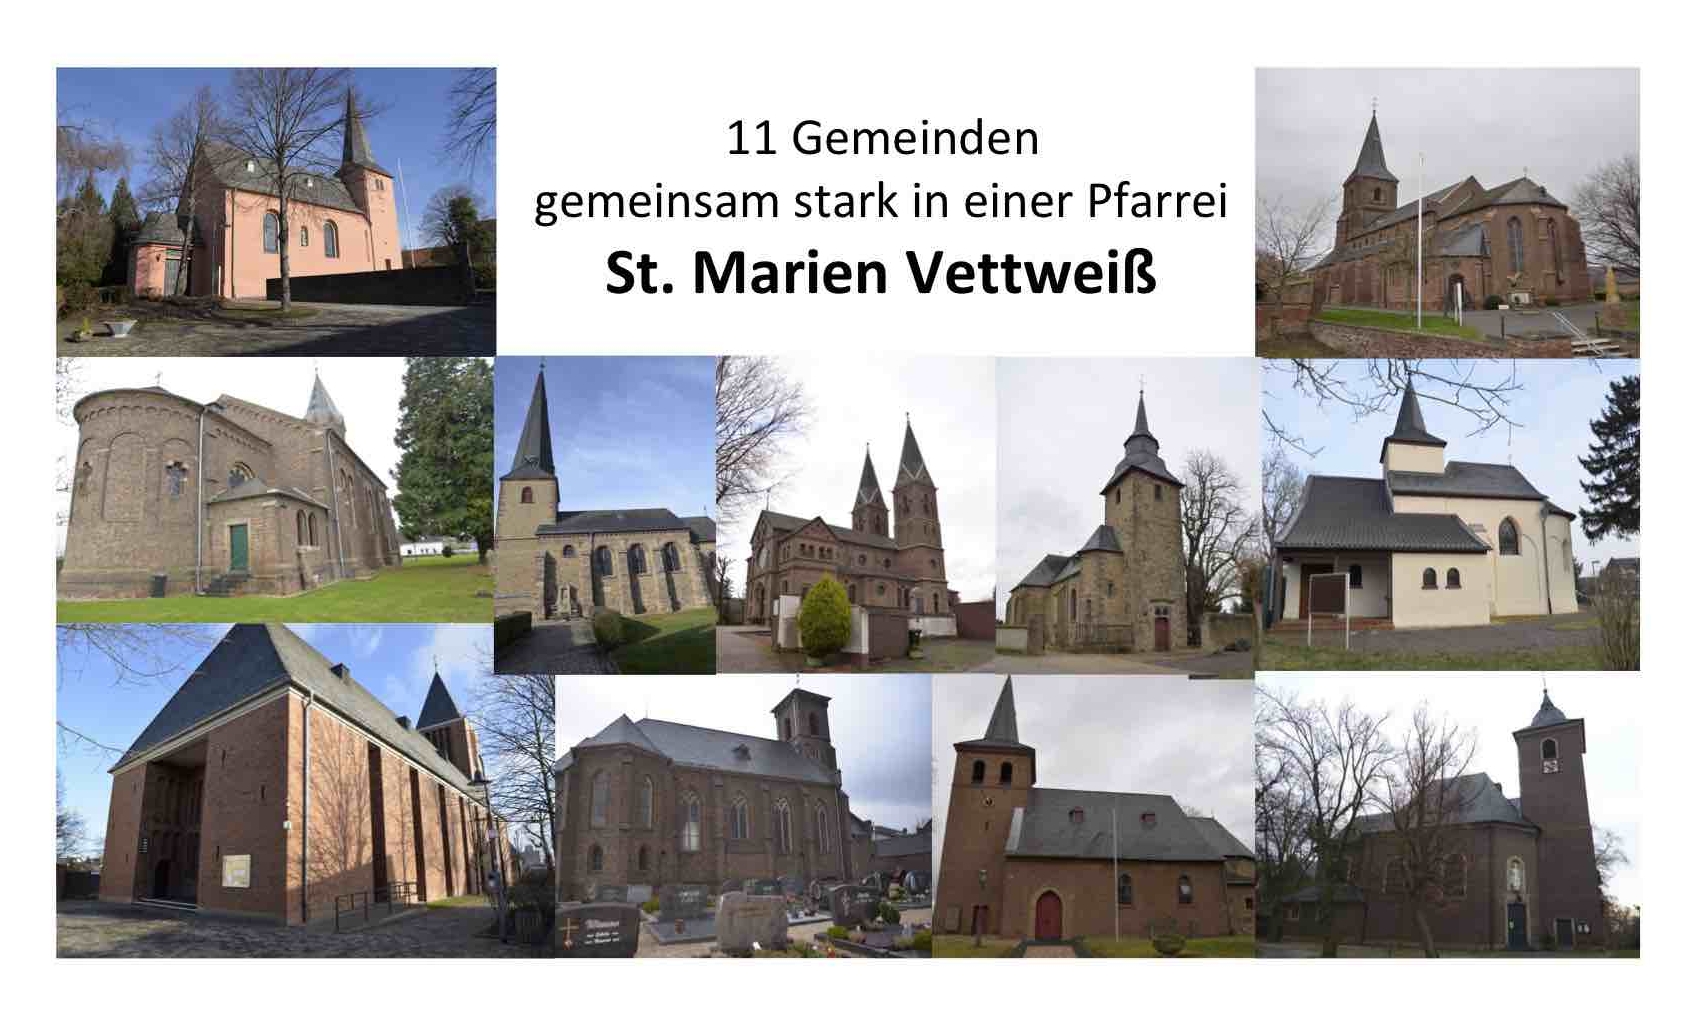 (c) St-marien-vettweiss.de